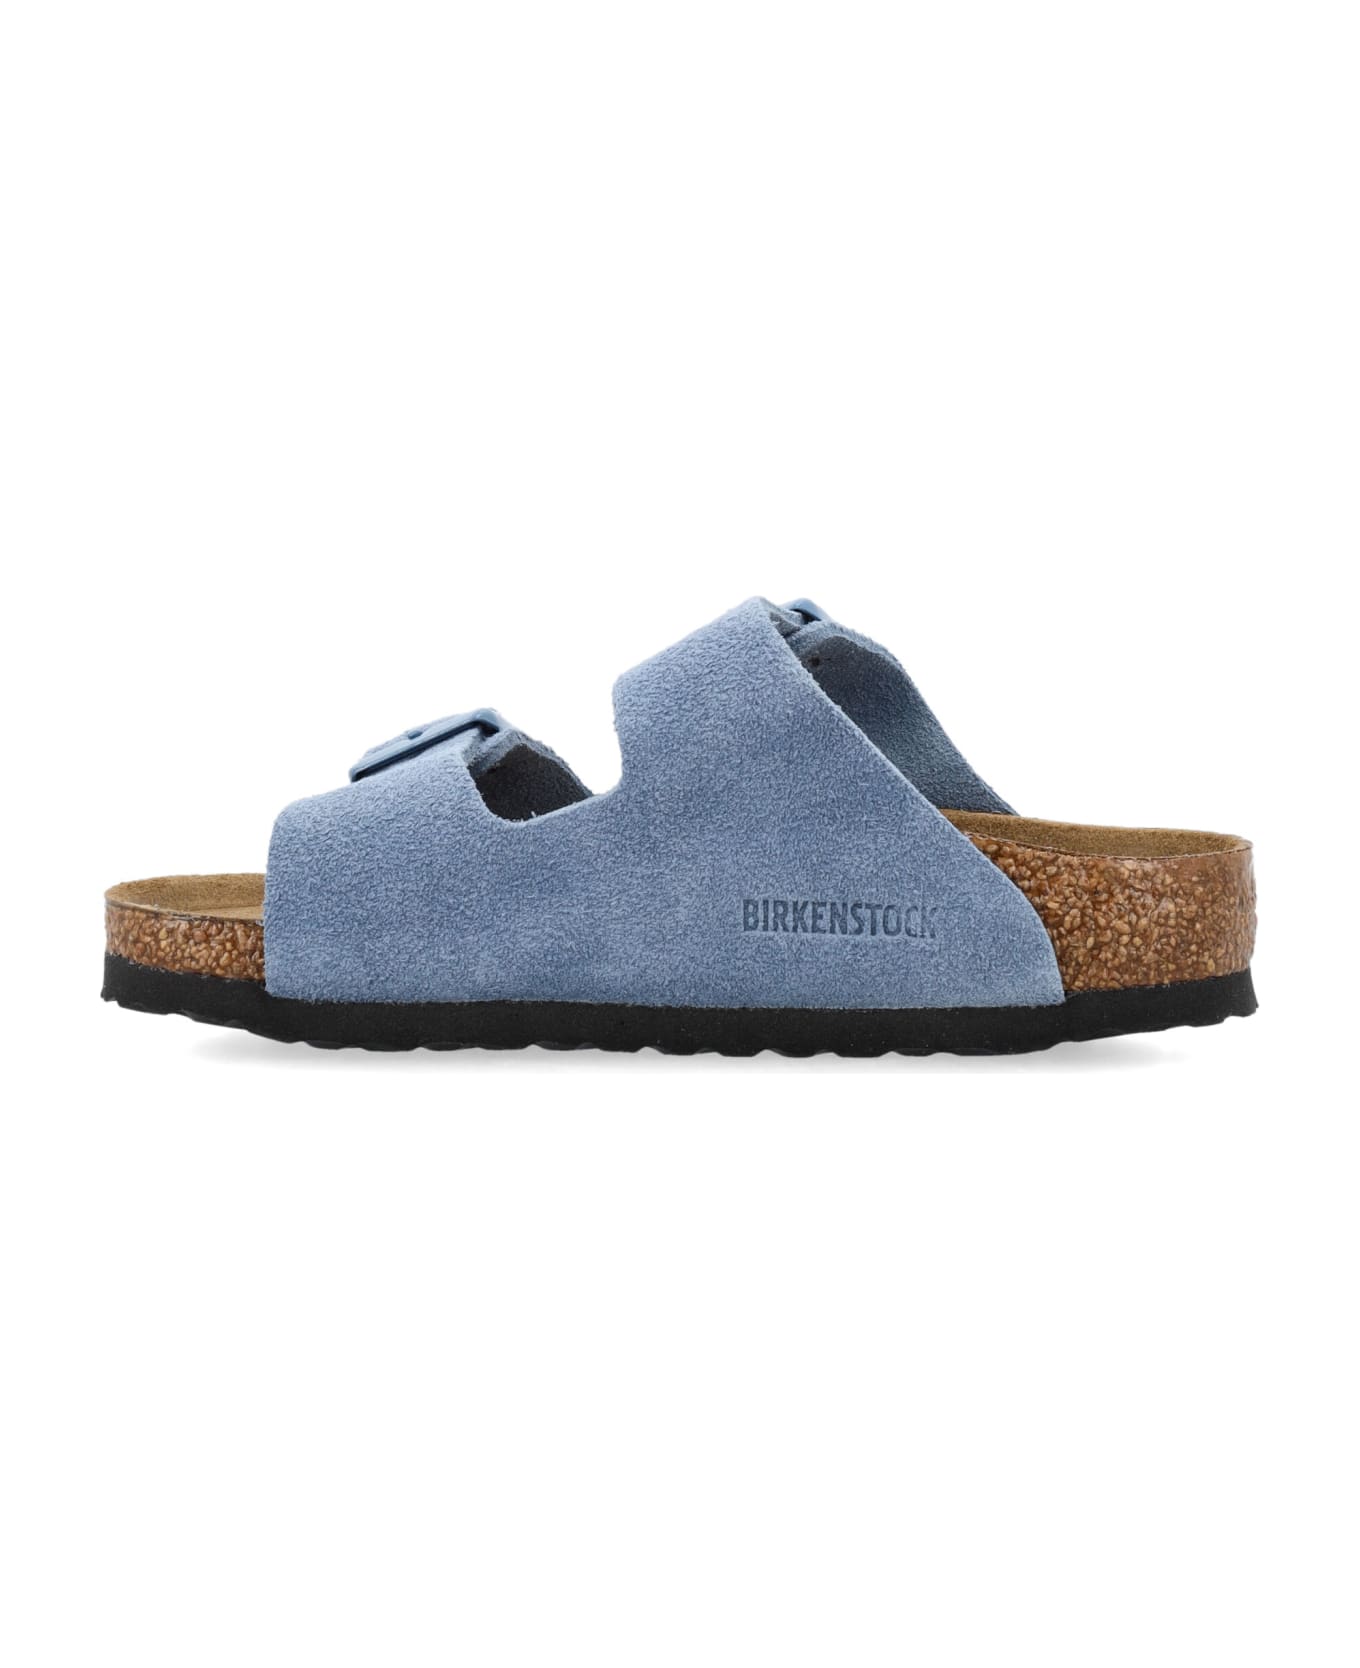 Birkenstock Arizona Sandals - BLUE